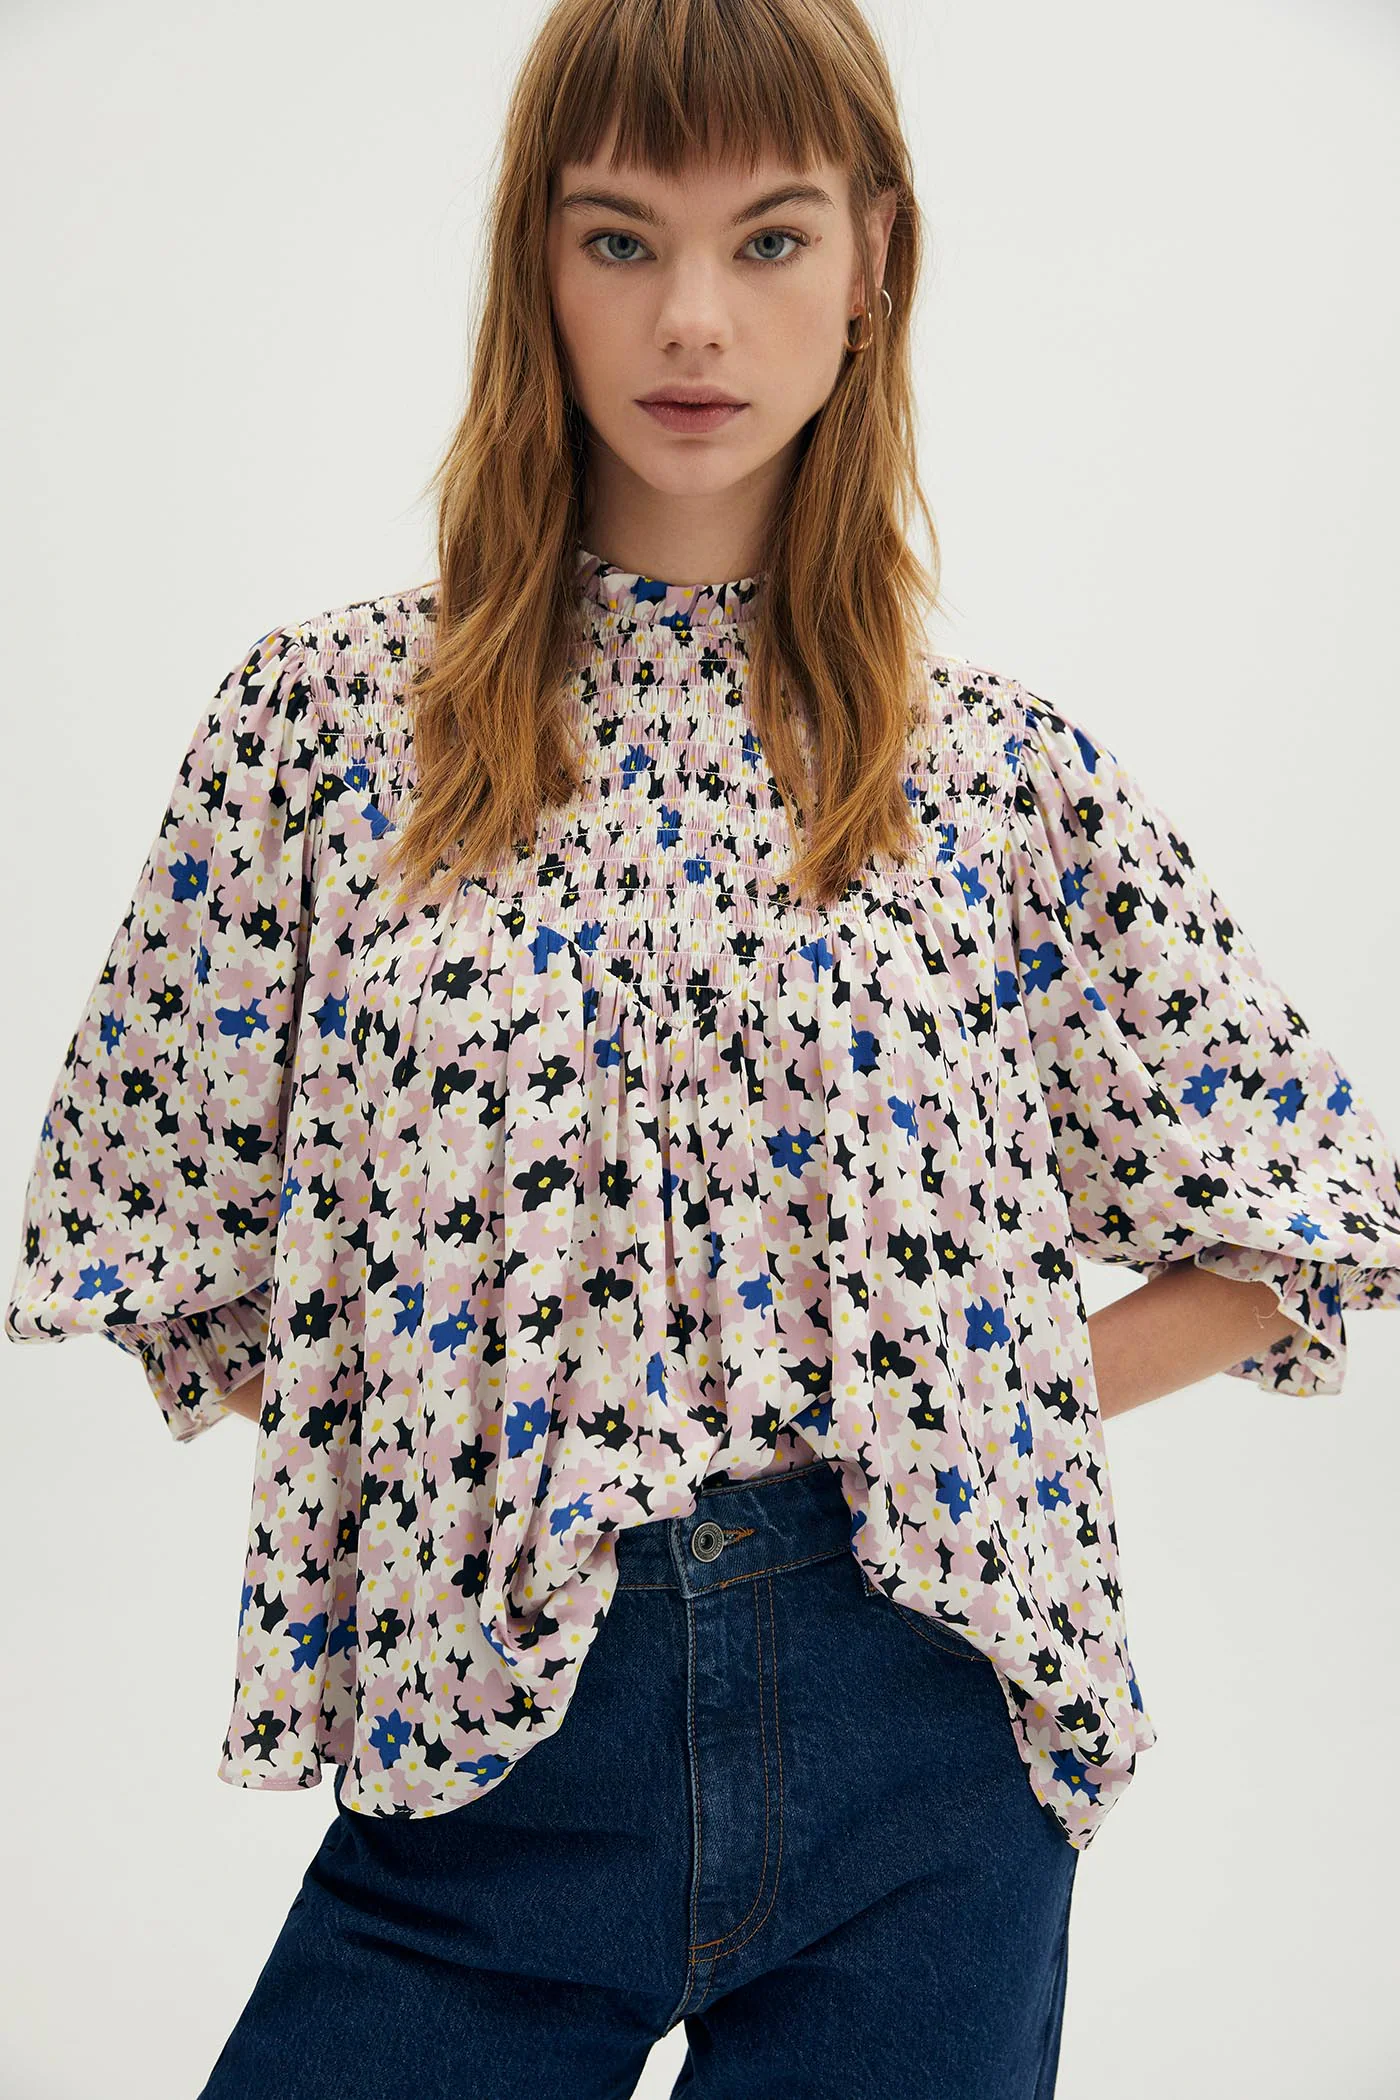 Fotos: Las blusas y camisas más bonitas de lo de Sfera para con la primavera Mujer